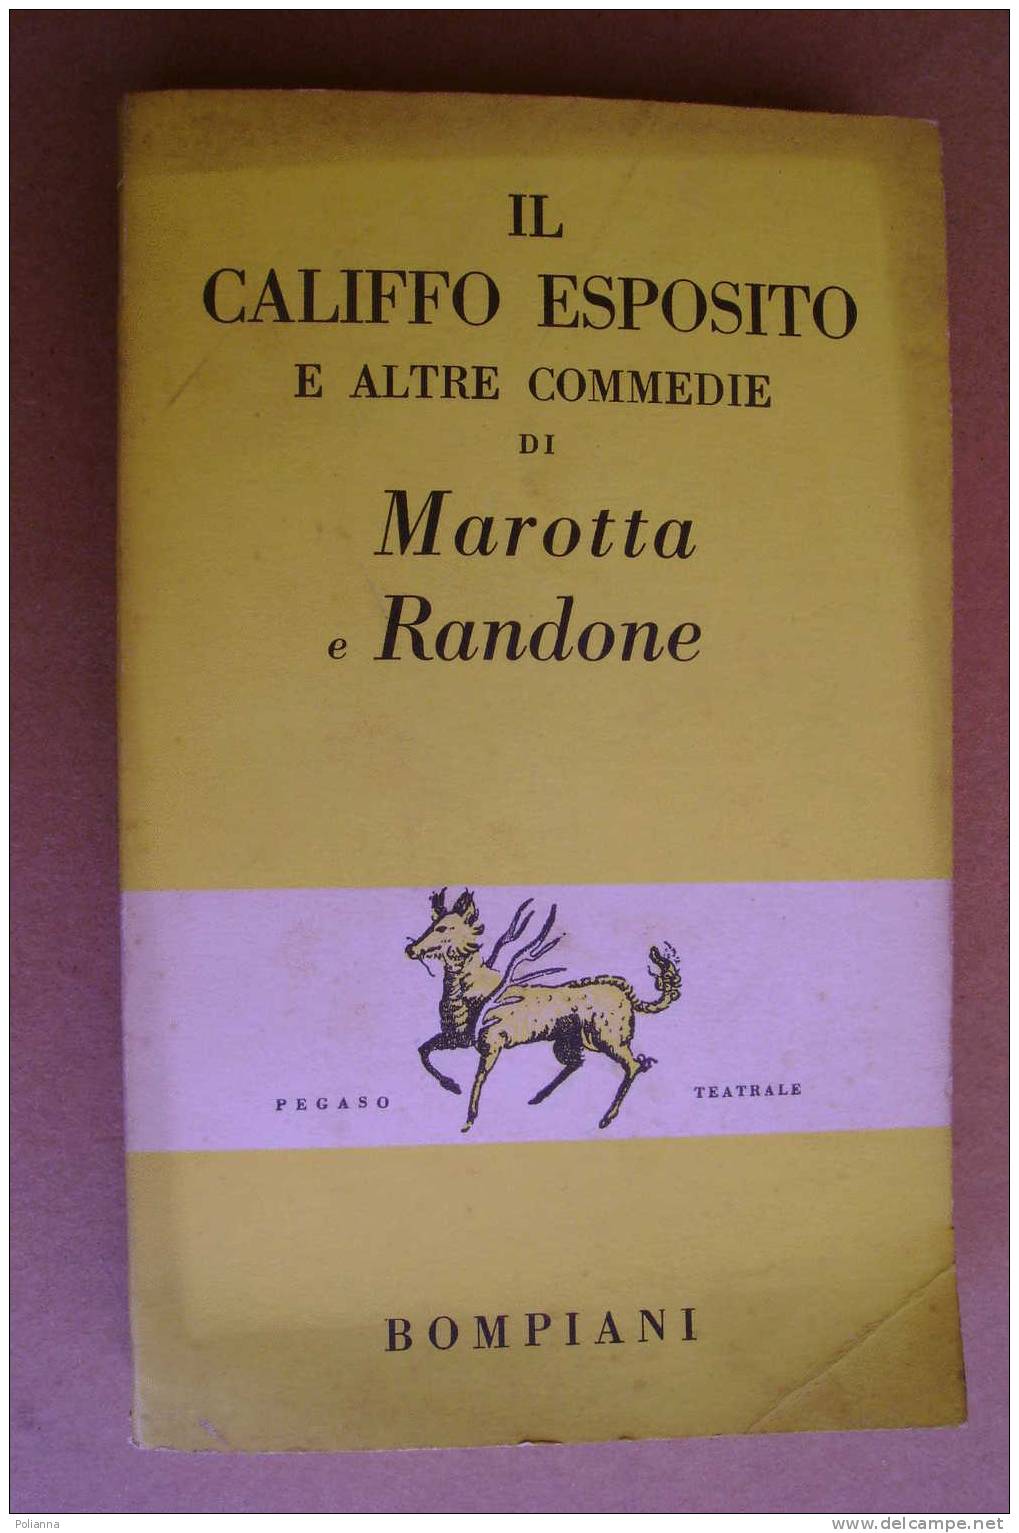 PAO/48 Marotta E Randone IL CALIFFO ESPOSITO Bompiani 1956 - Theater